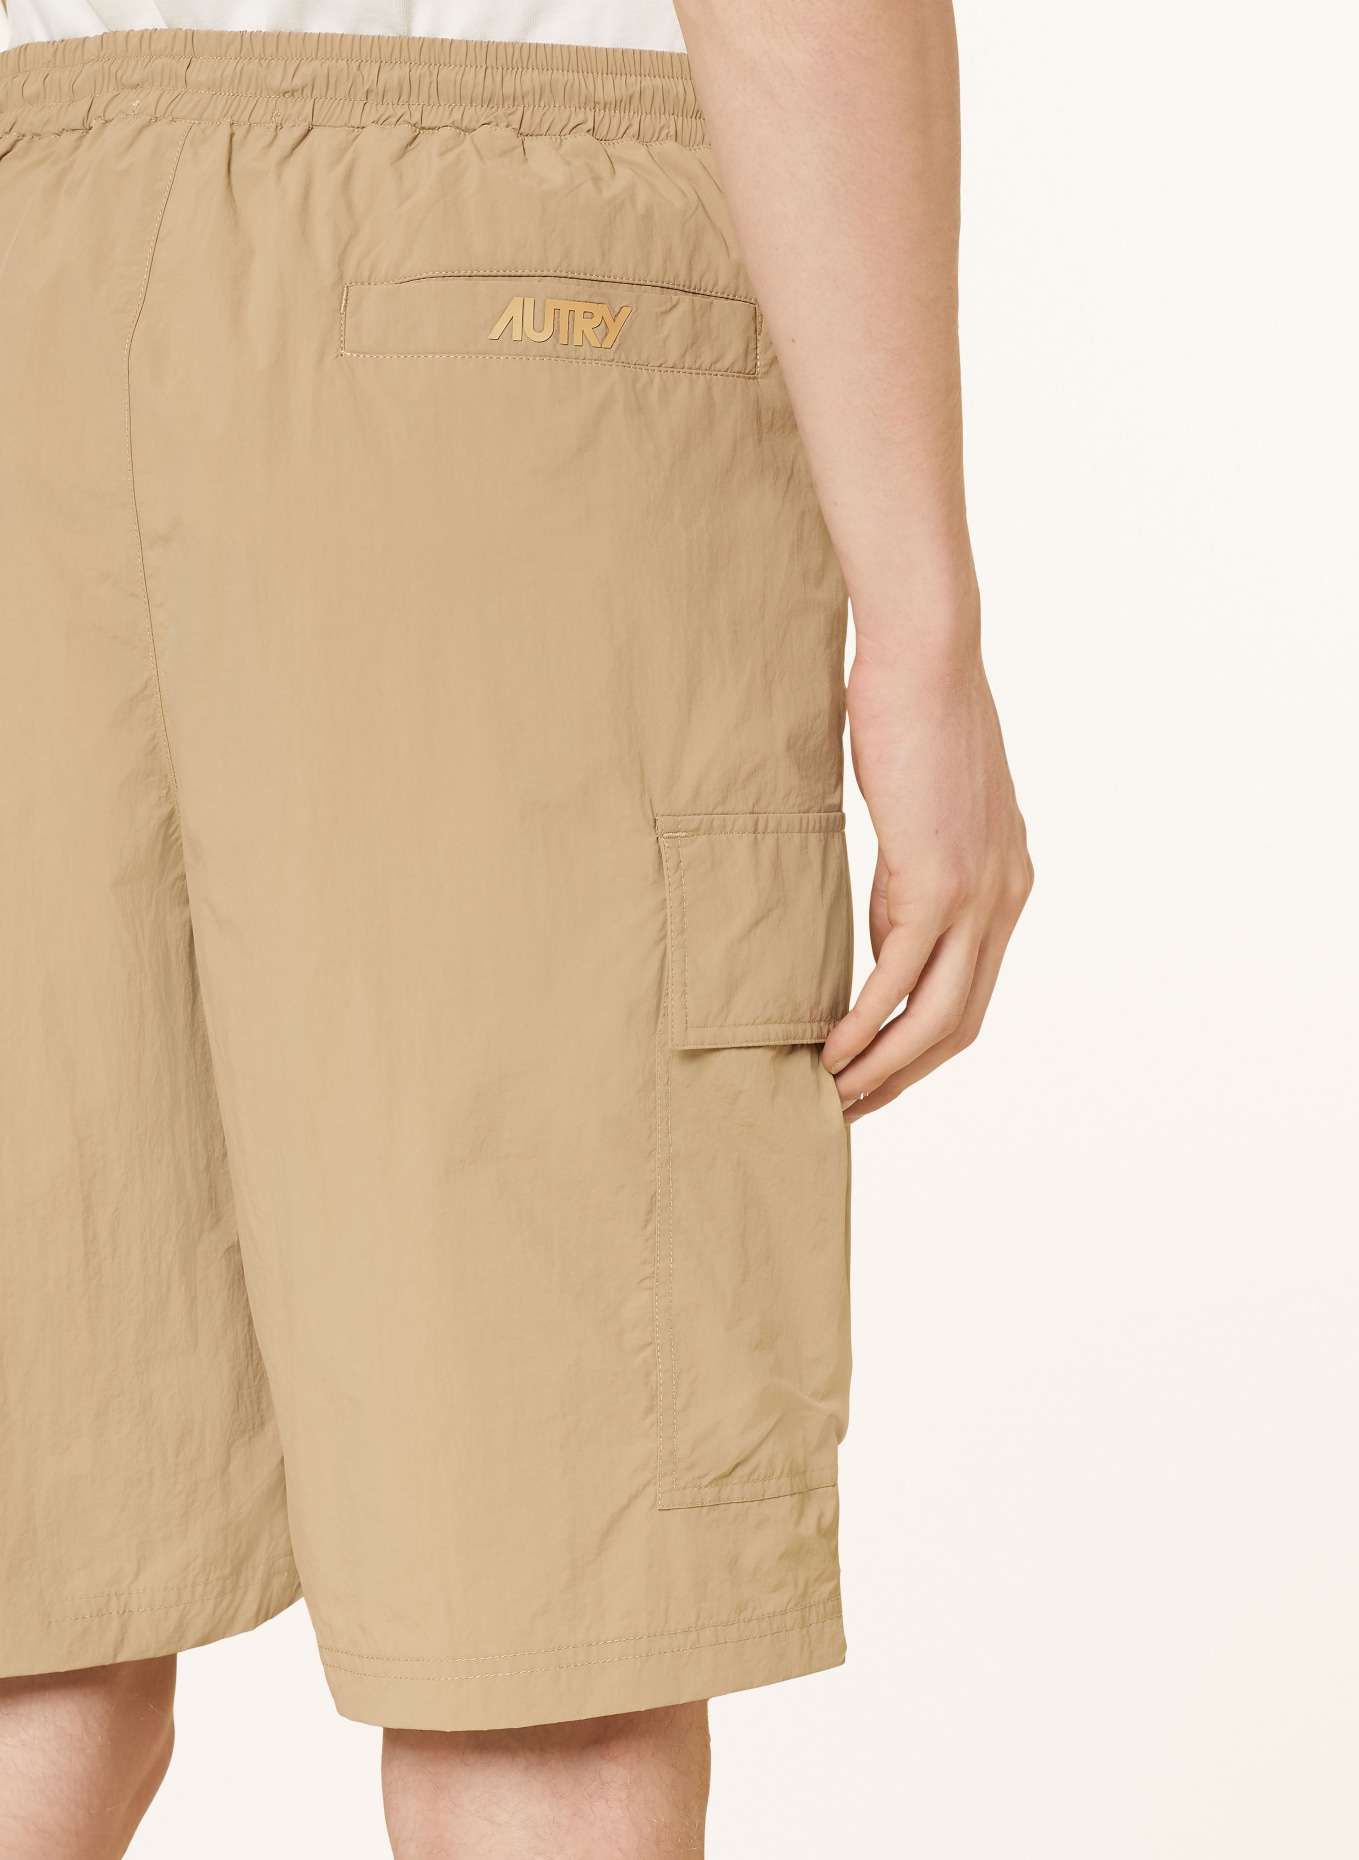 AUTRY Cargo shorts, Color: 552C KHAKI (Image 6)